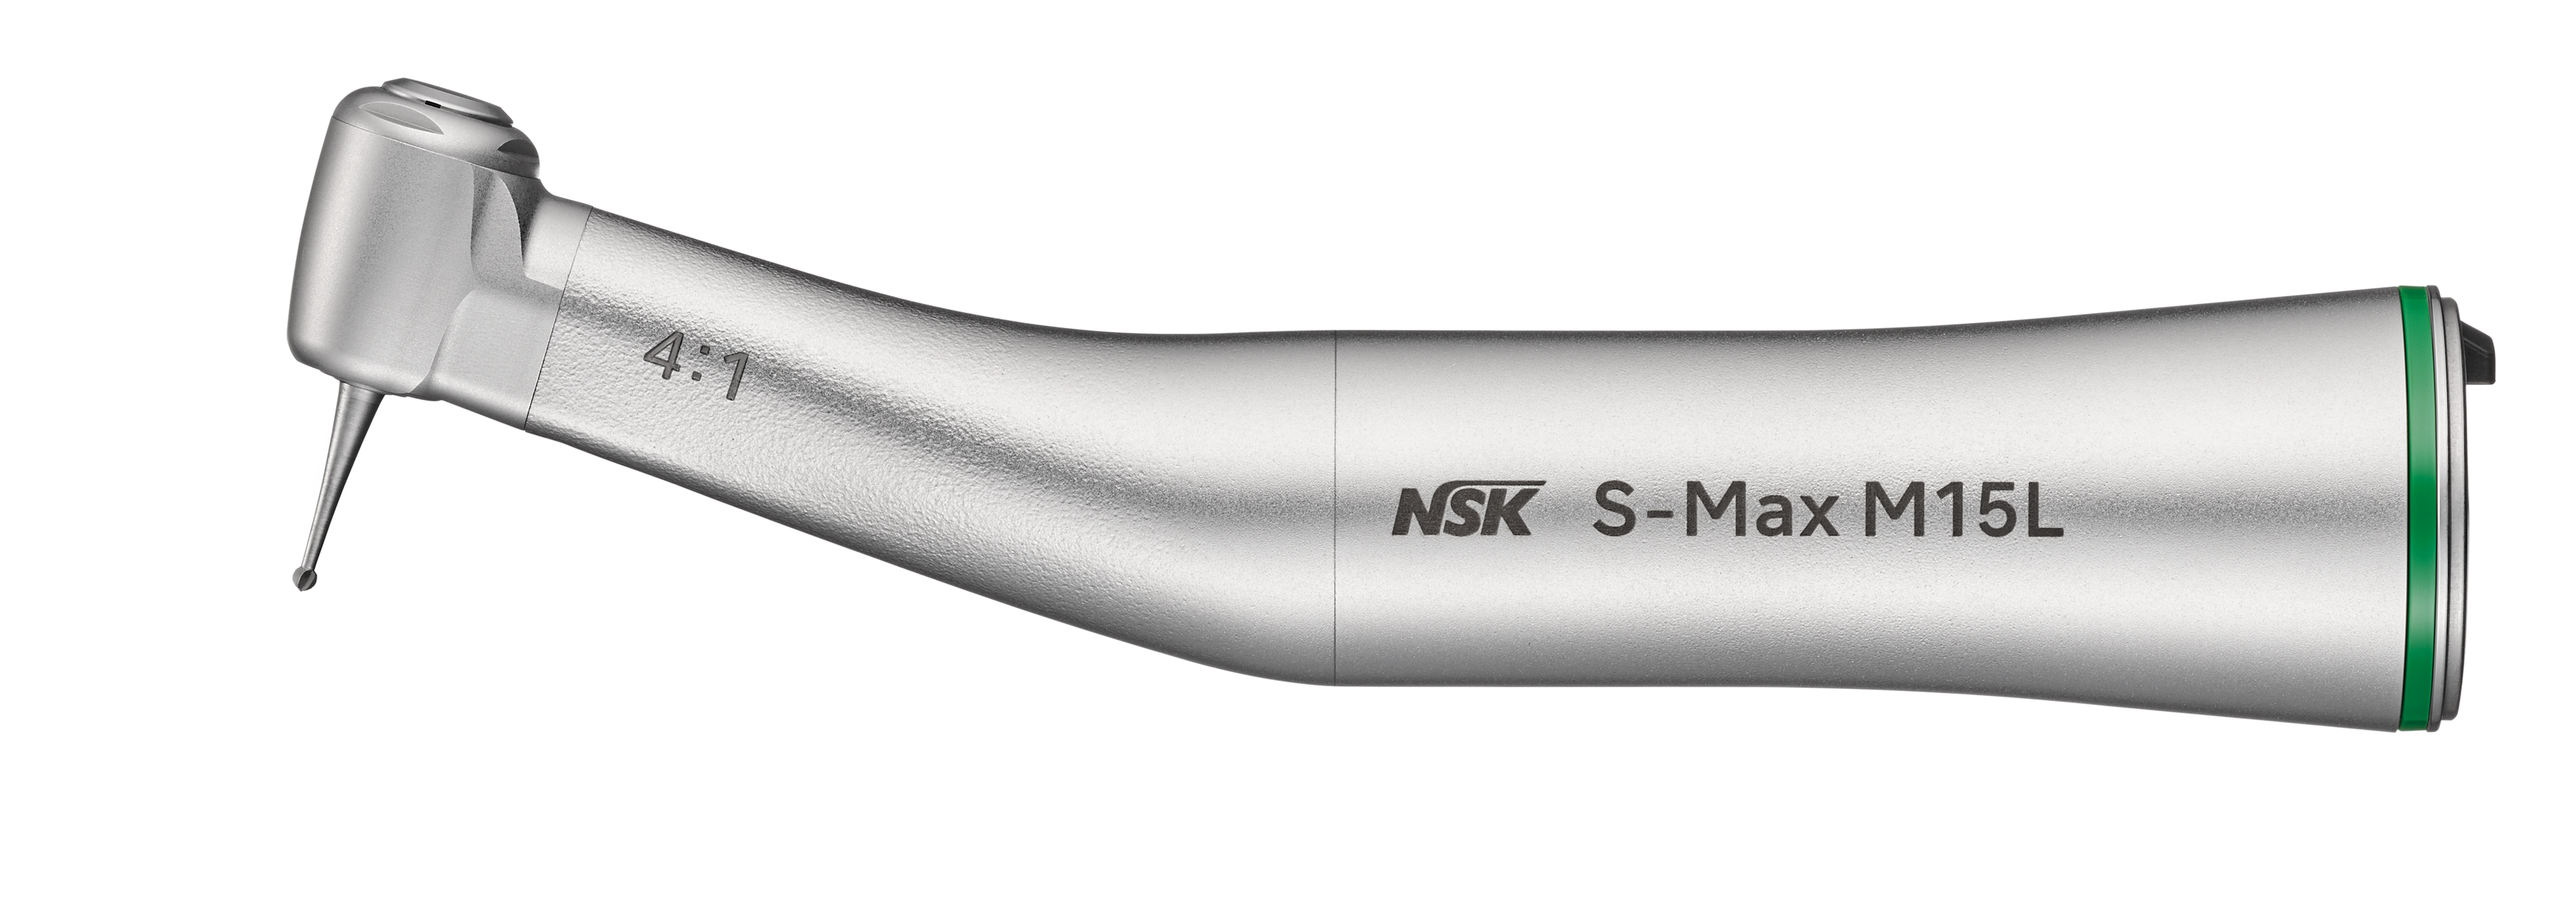 NSK S-Max M15L, Winkelstück grün 4:1 mit Licht